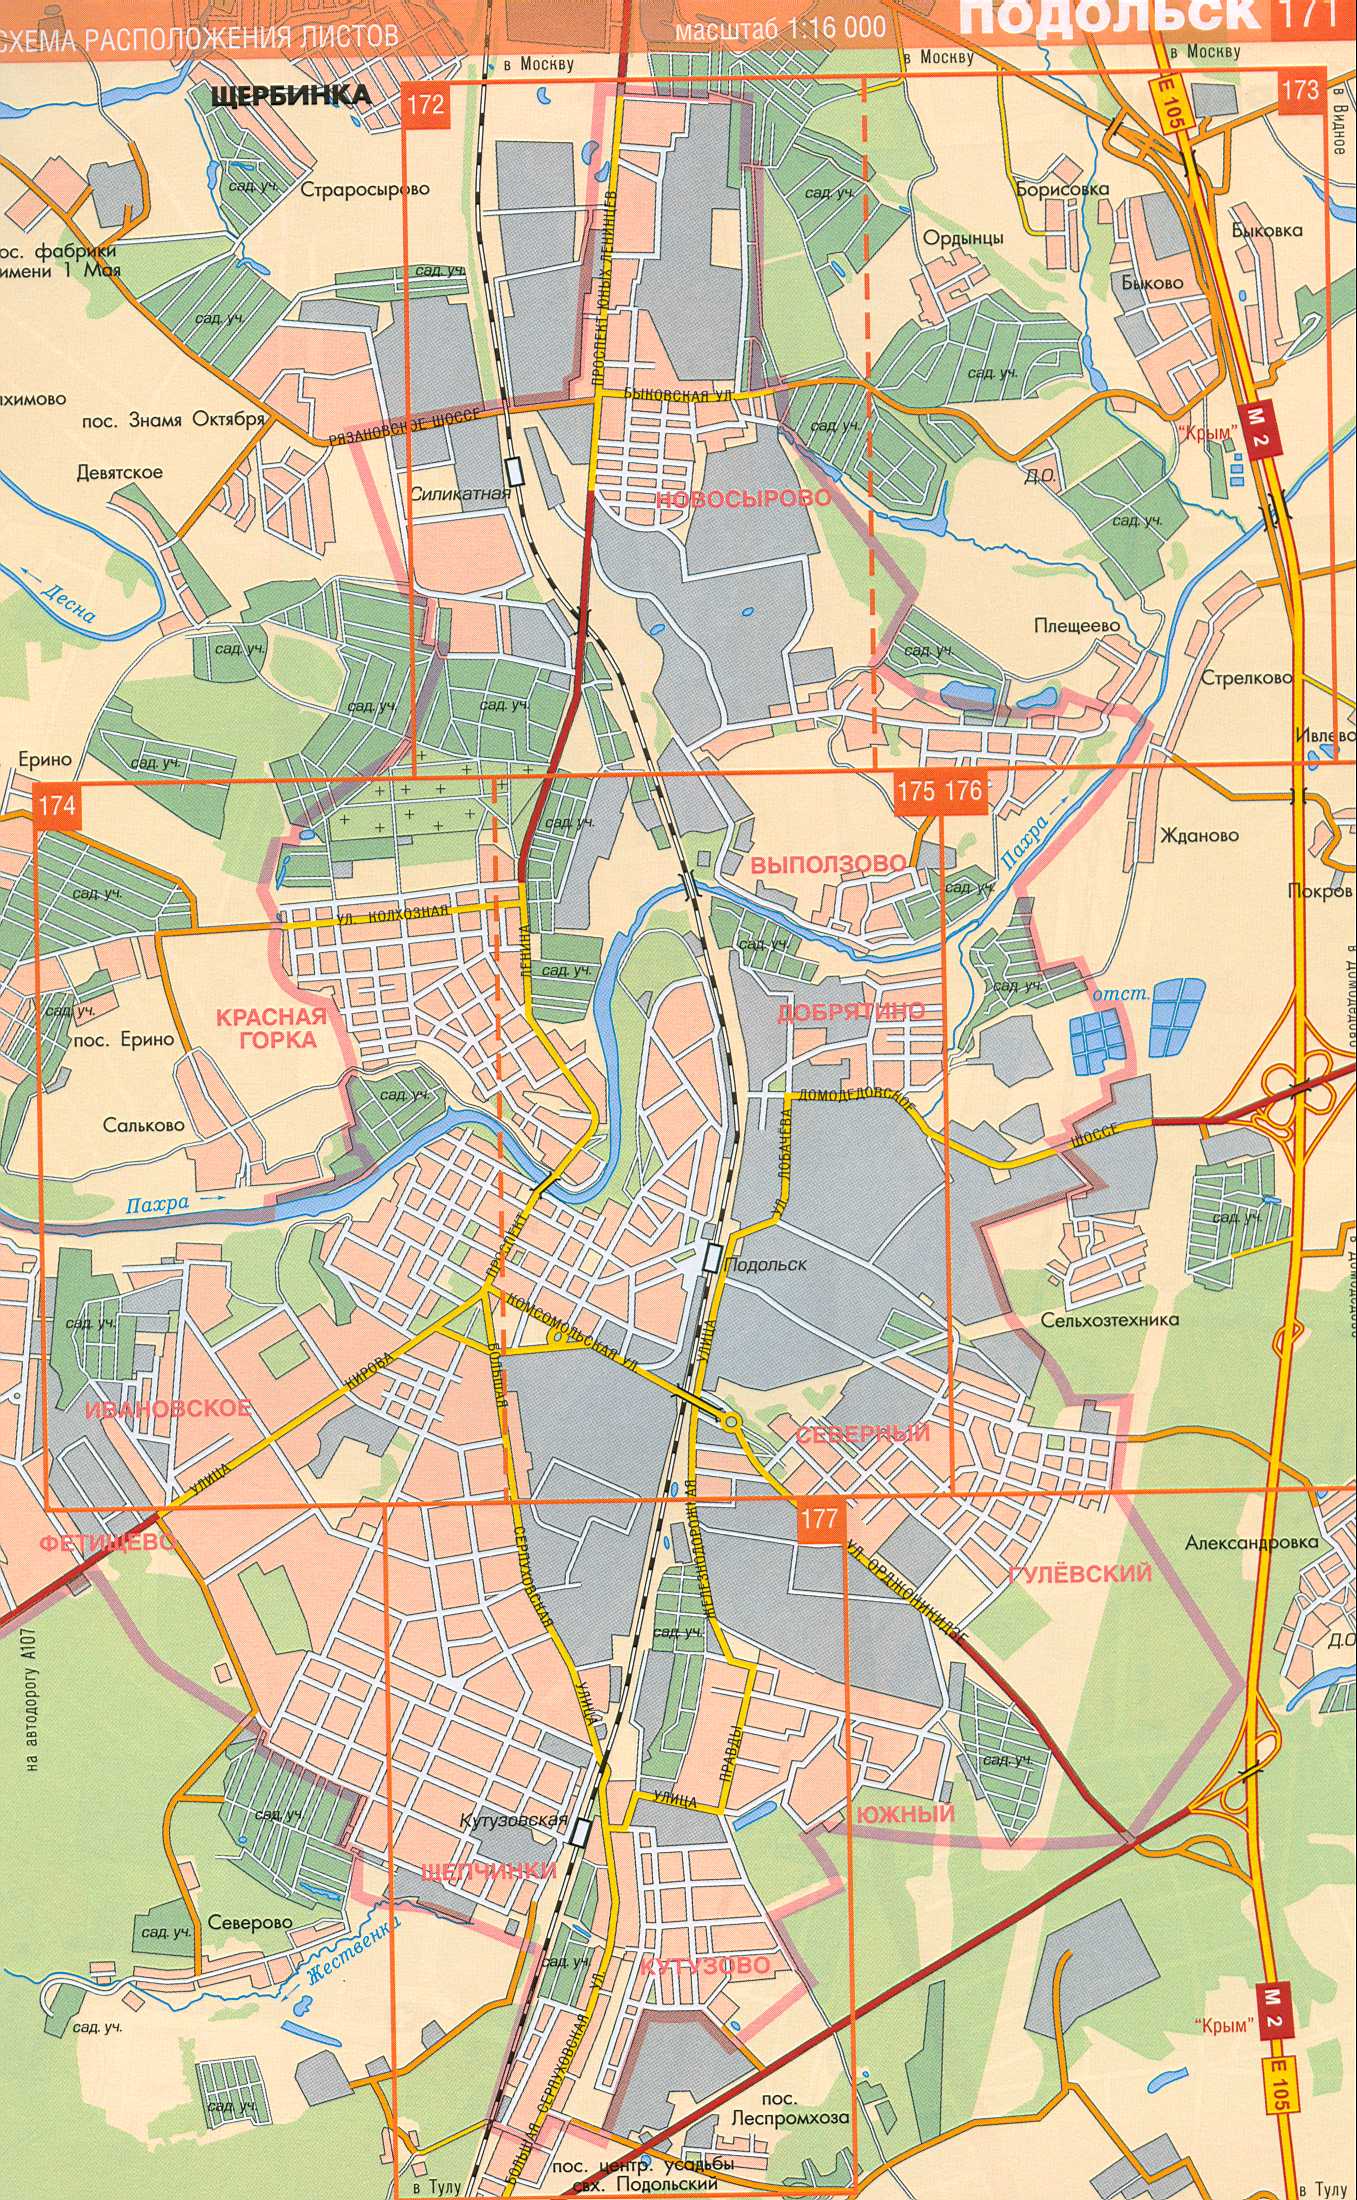 Карта Подольска. Районный центр Московской области город Подольск. Скачать бесплатно карту , A0 - 